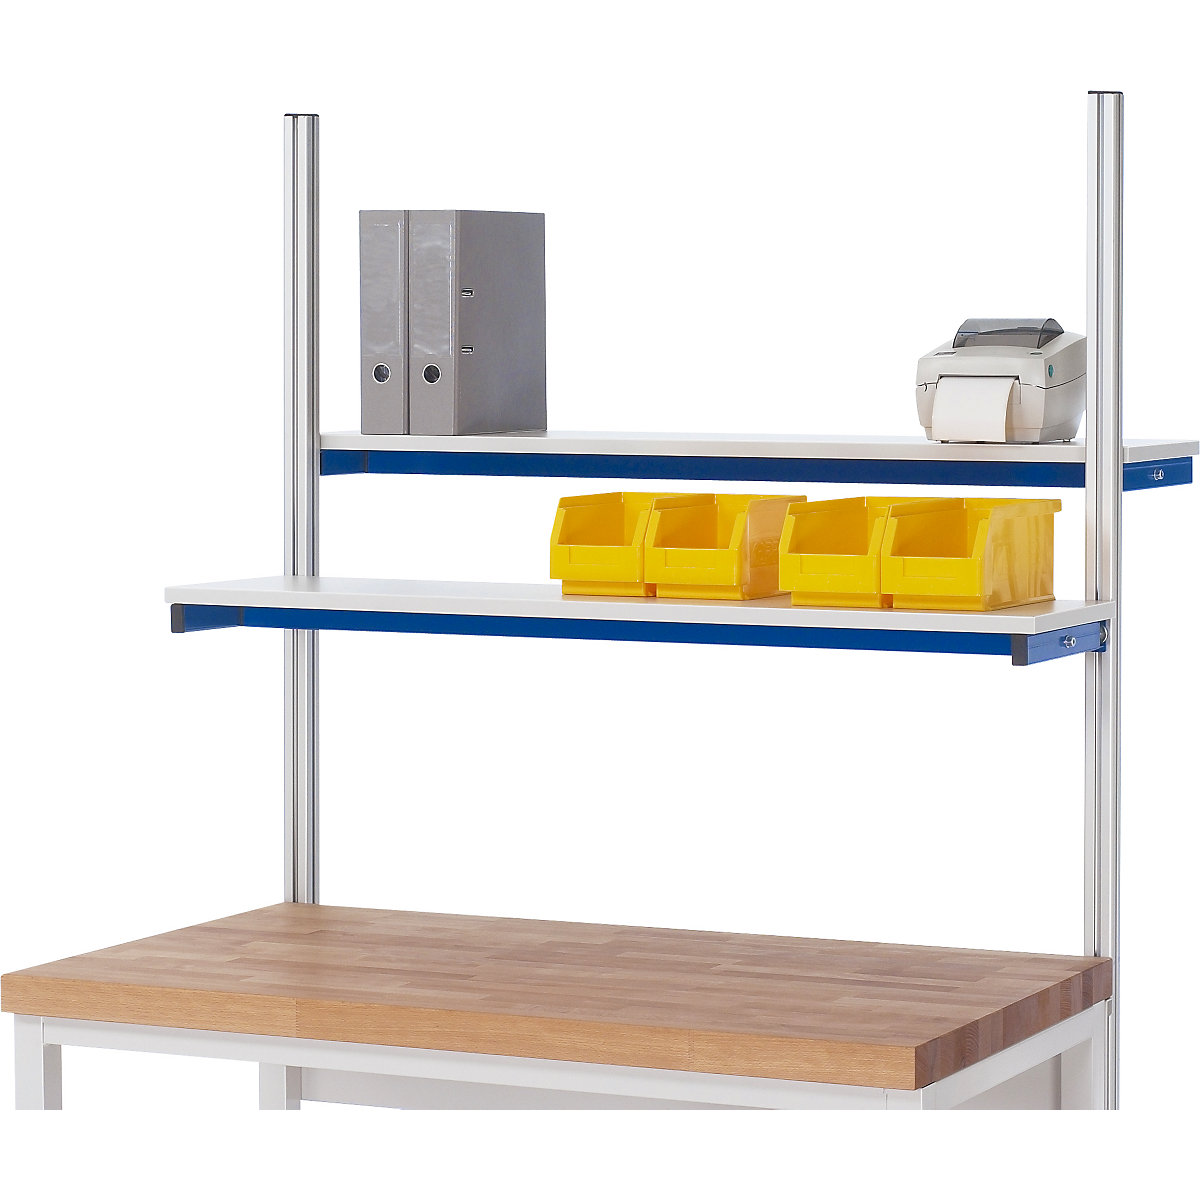 Mensolina – RAU, per strutture modulari su tavoli da lavoro e banchi da lavoro RAU, per larghezza campata 1250 mm-1